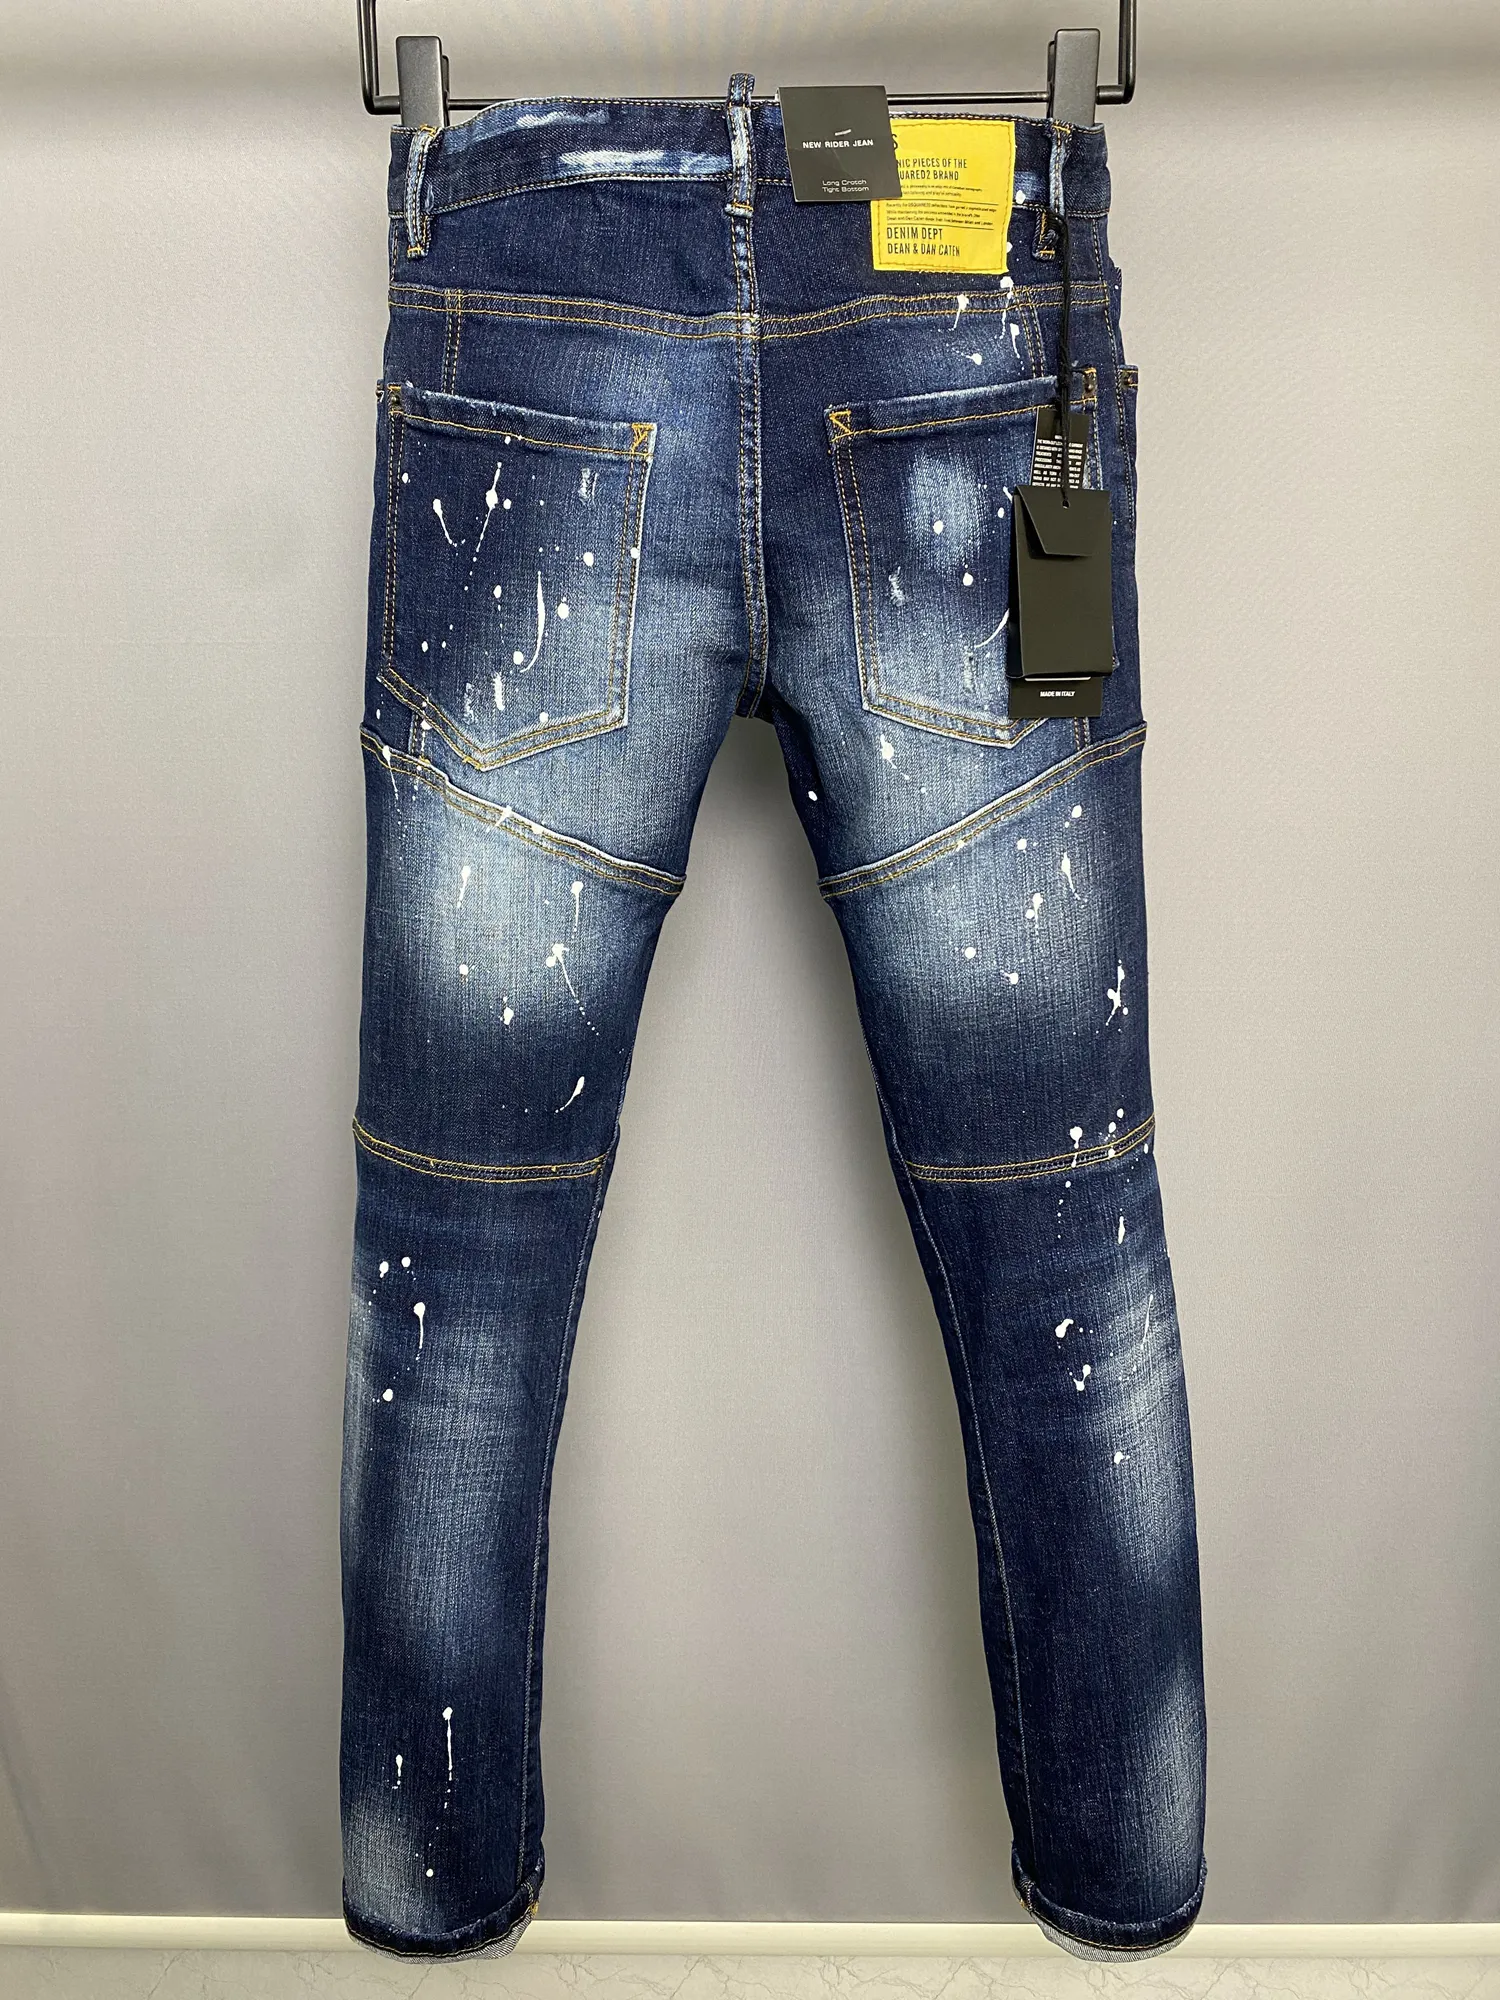 DSQ PHANTOM TURTLE Jeans para hombre Jeans de diseñador de lujo para hombre Skinny Ripped Cool Guy Causal Hole Denim Fashion Brand Fit Jeans Me289D